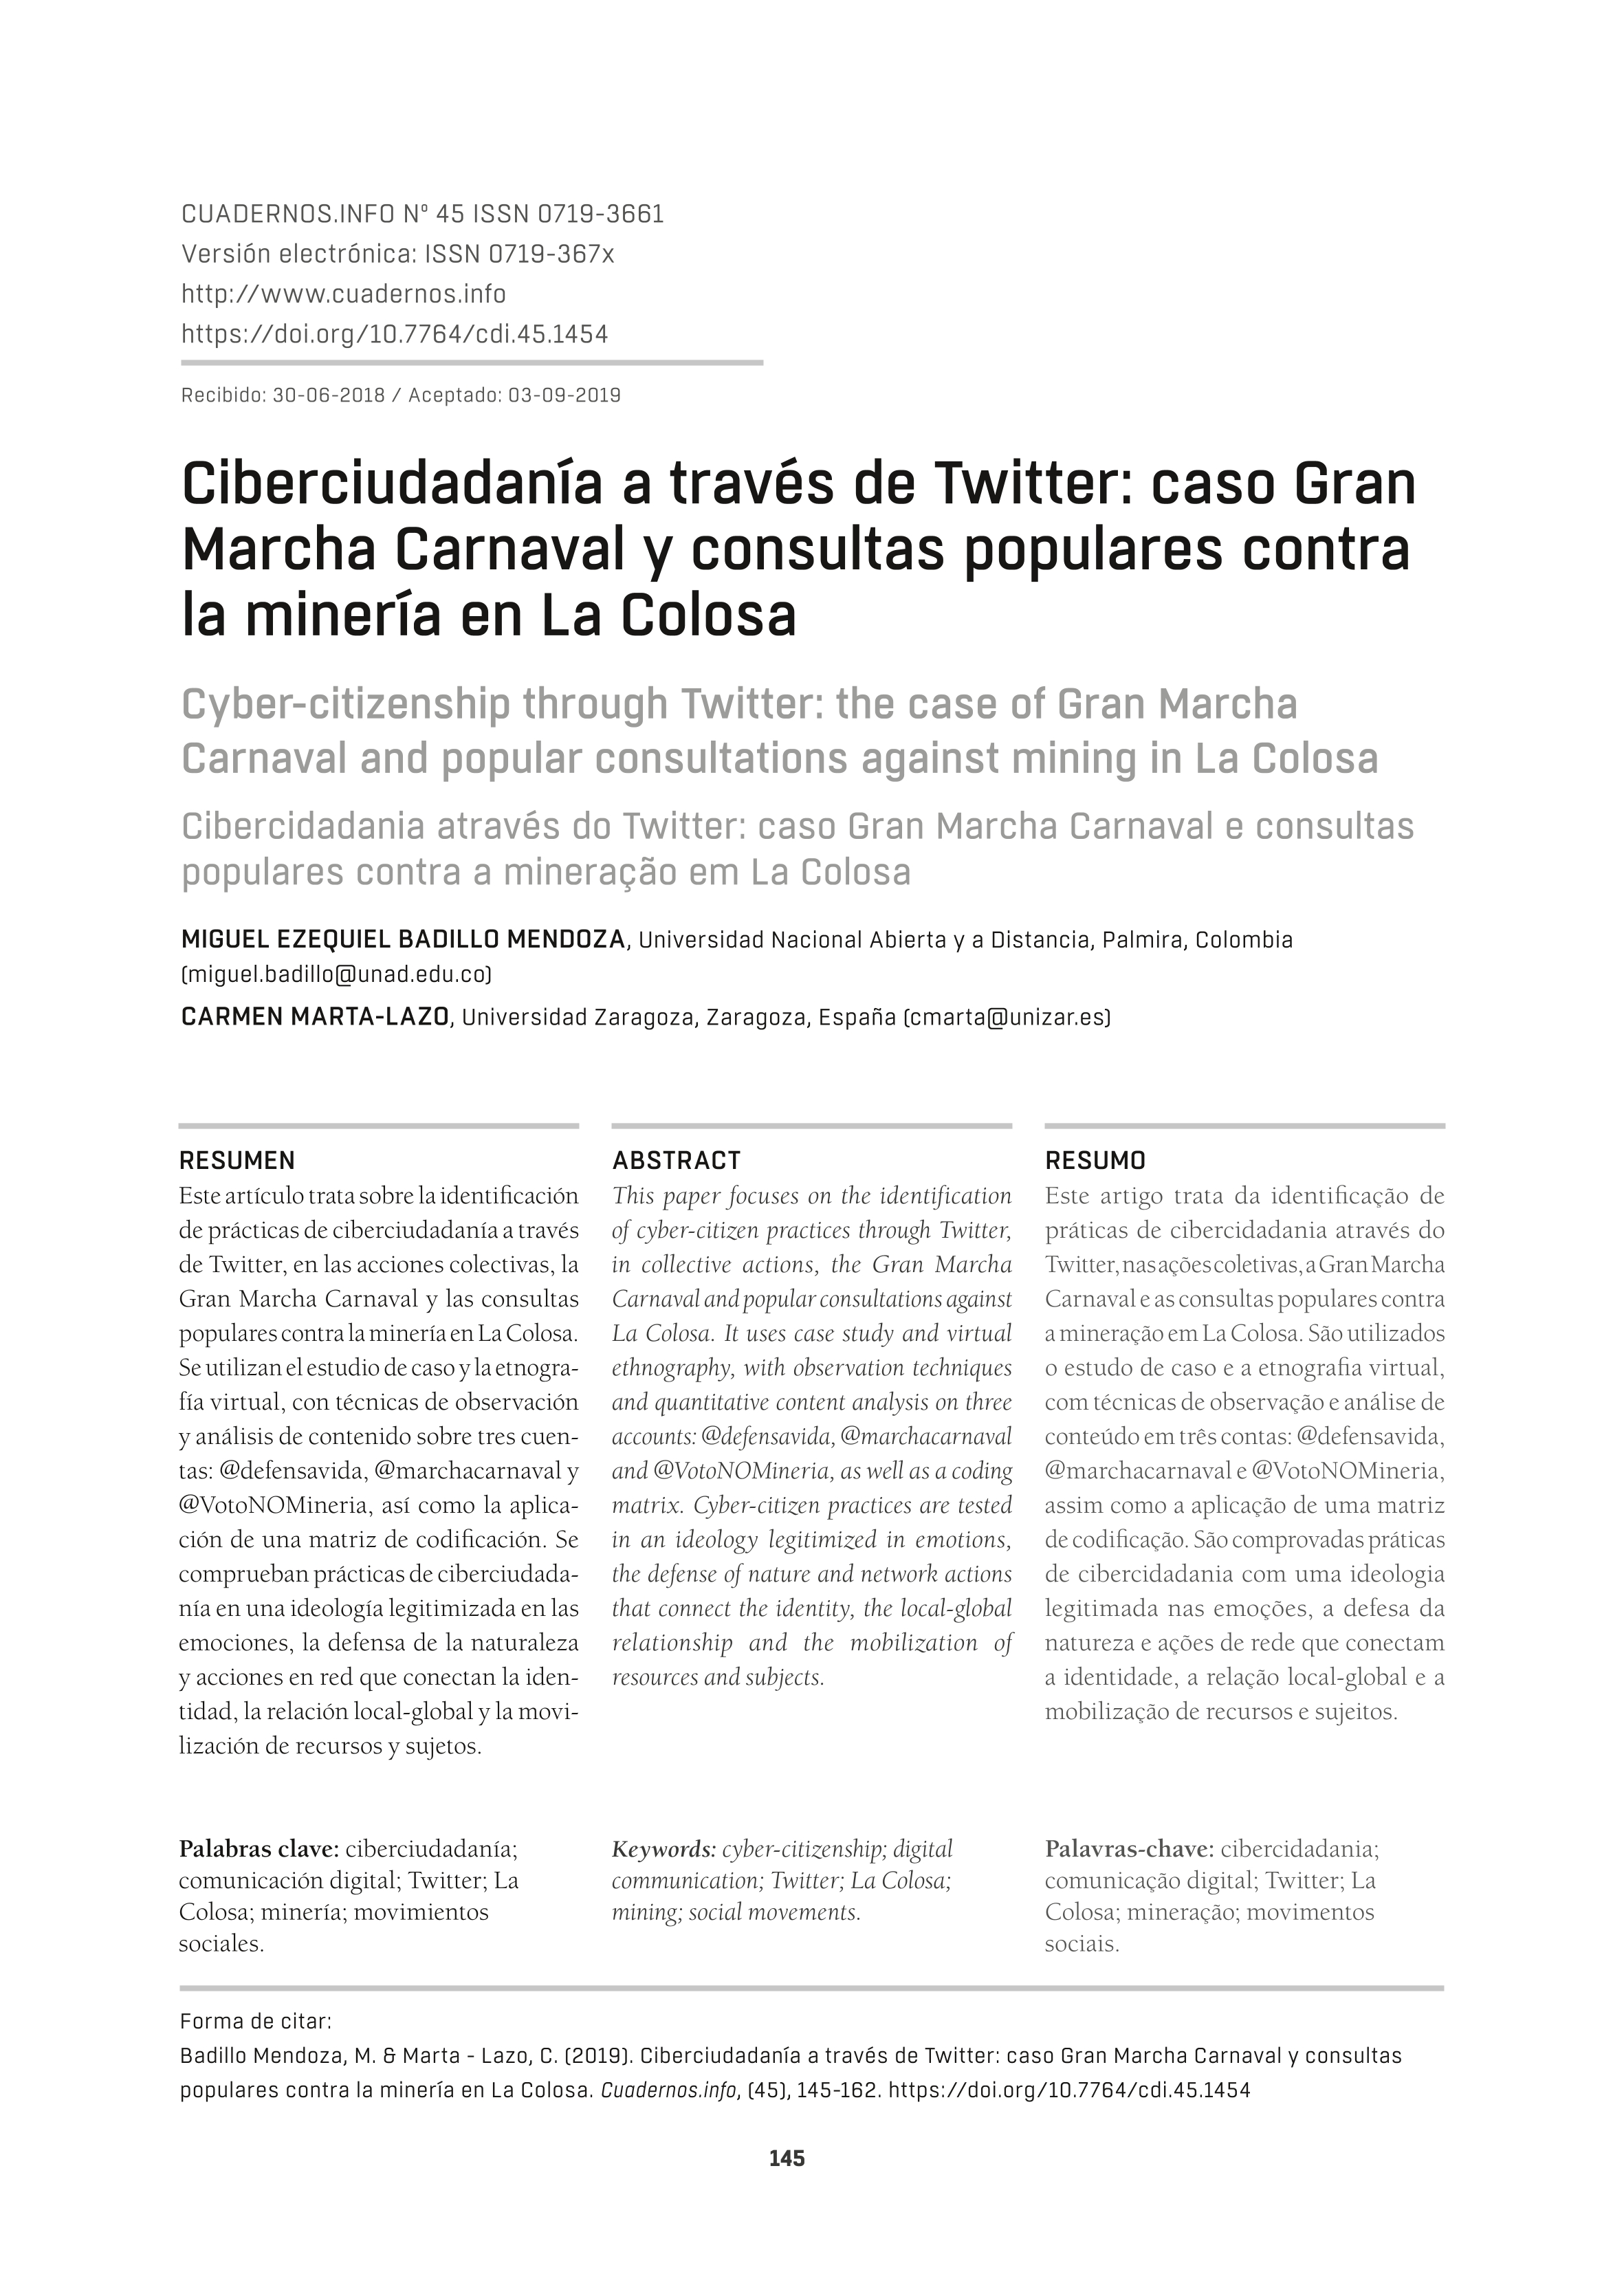 Ciberciudadanía a través de Twitter: caso Gran Marcha Carnaval y consultas populares contra la minería en La Colosa